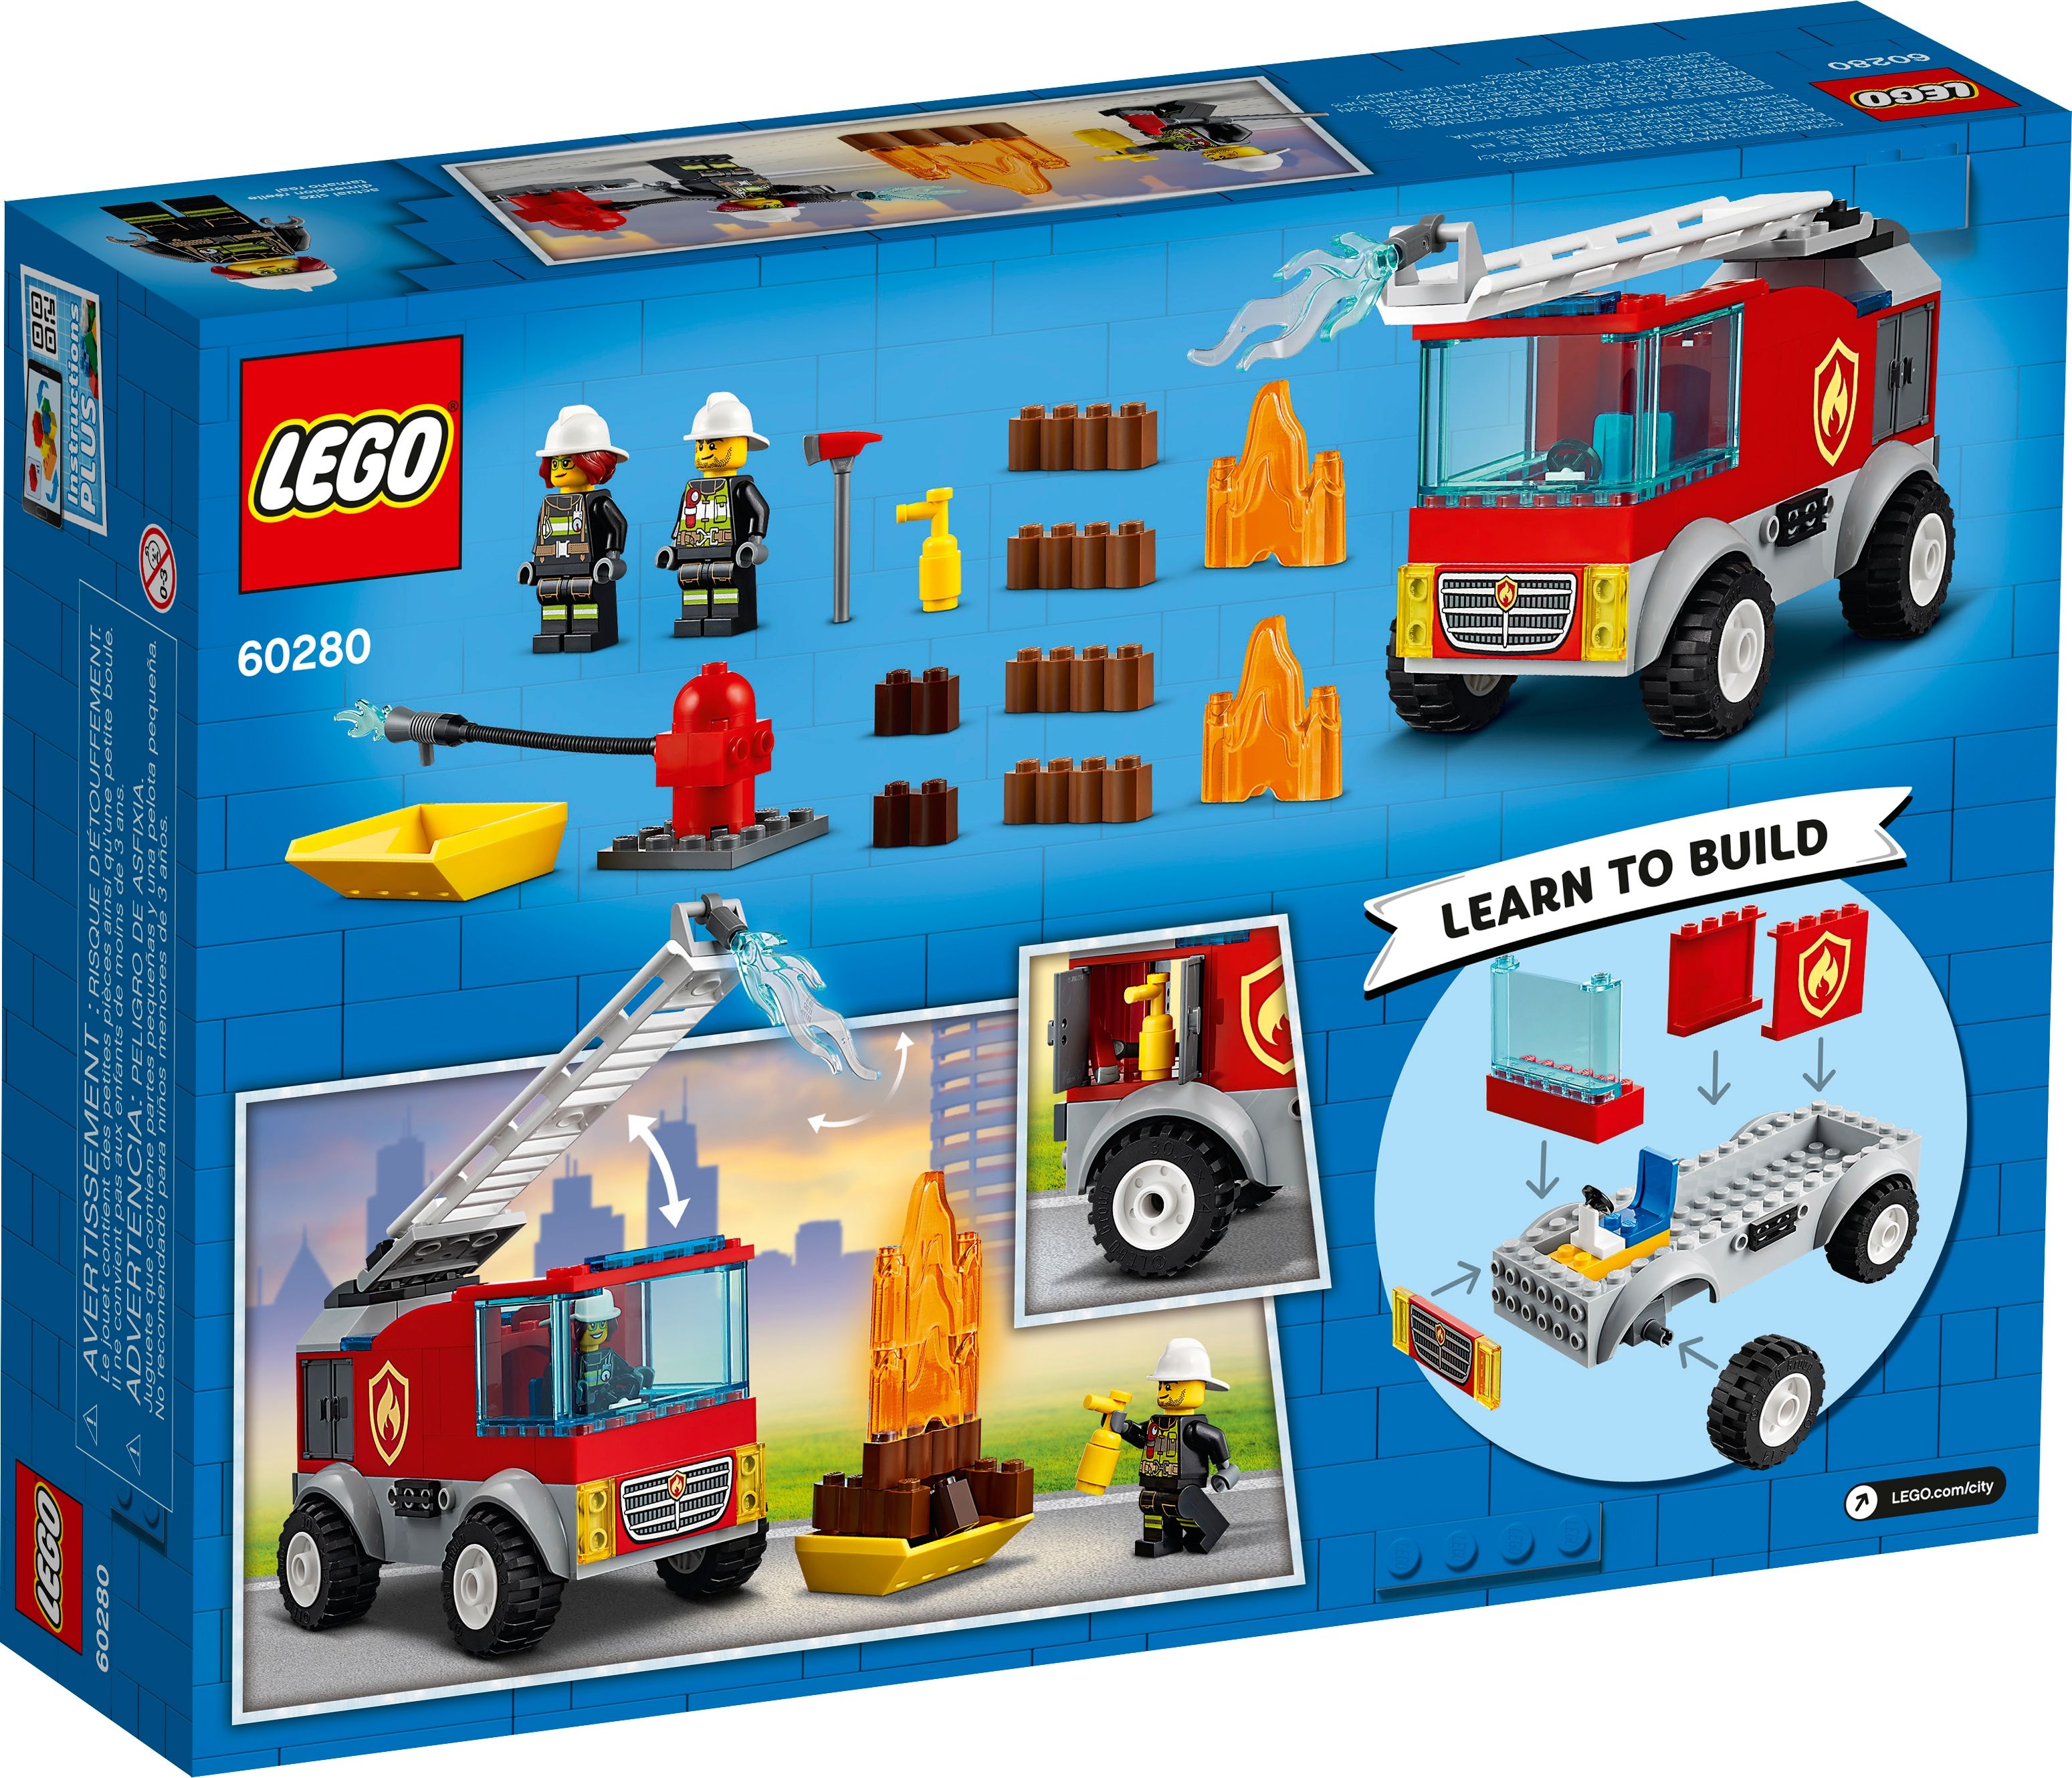 LEGO City 60280 Feuerwehrauto LEGO_60280_box5_v39.jpg